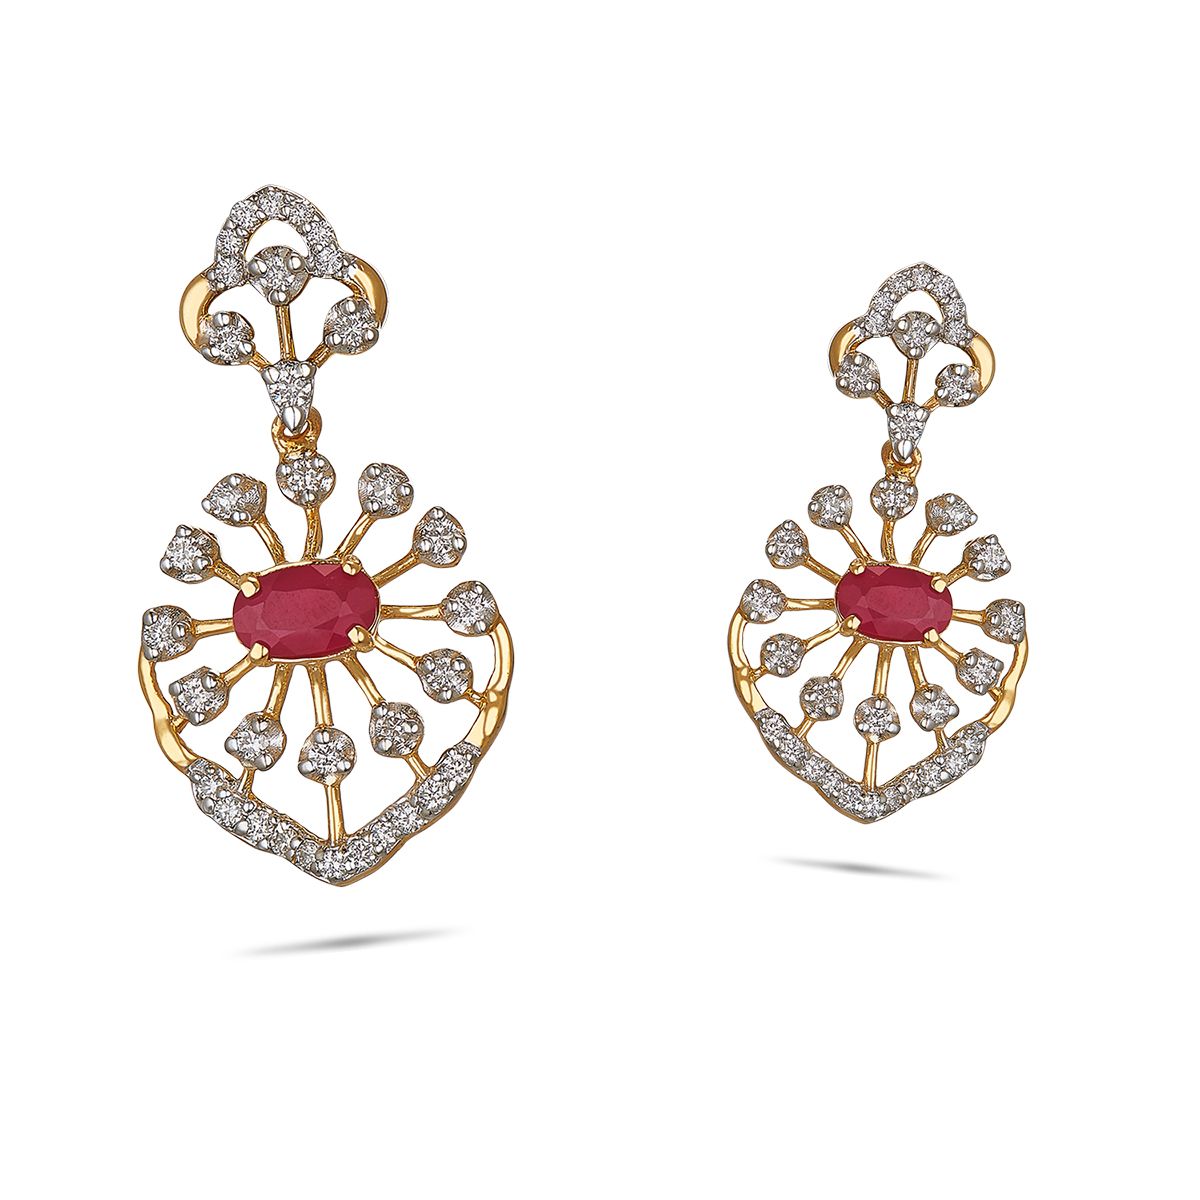 Share 72+ diamond and ruby earrings india best - 3tdesign.edu.vn